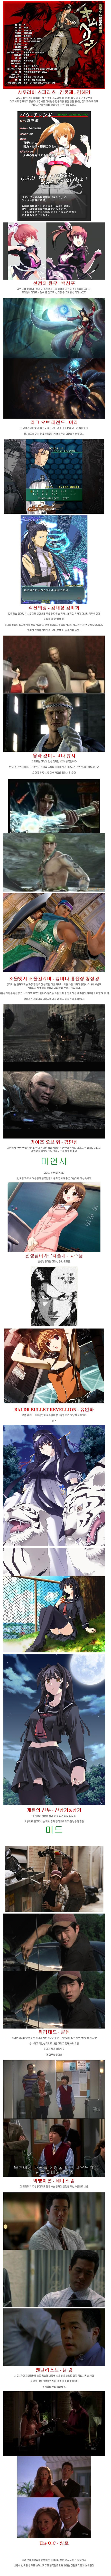 해외 작품들 속의 한국인3.jpg